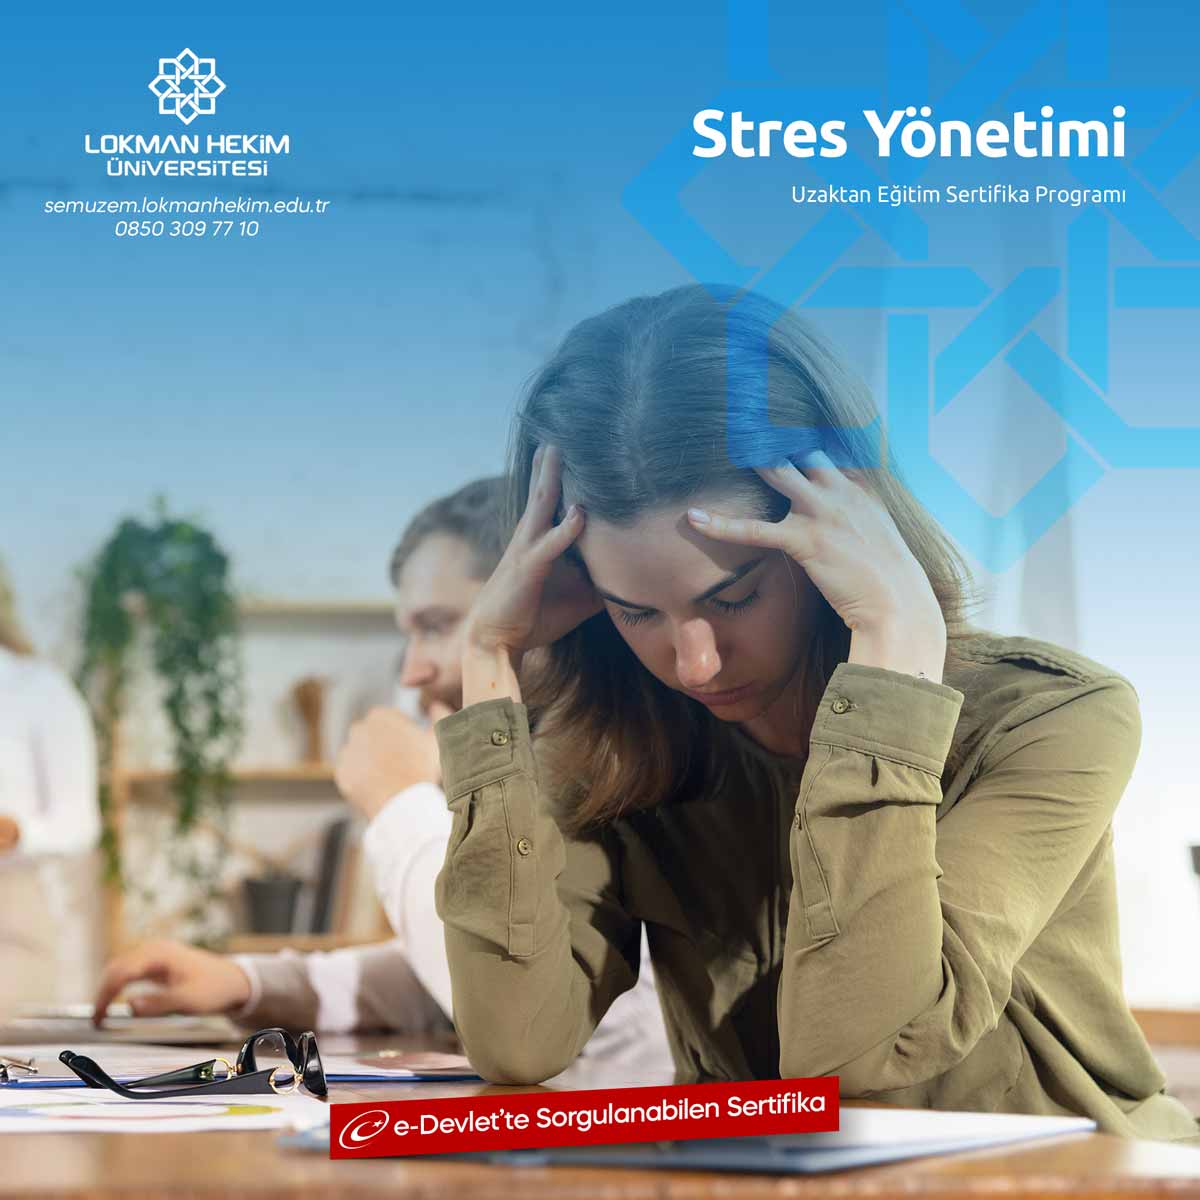 Stres Yönetimi Sertifikası Nedir, Nasıl Alınır?